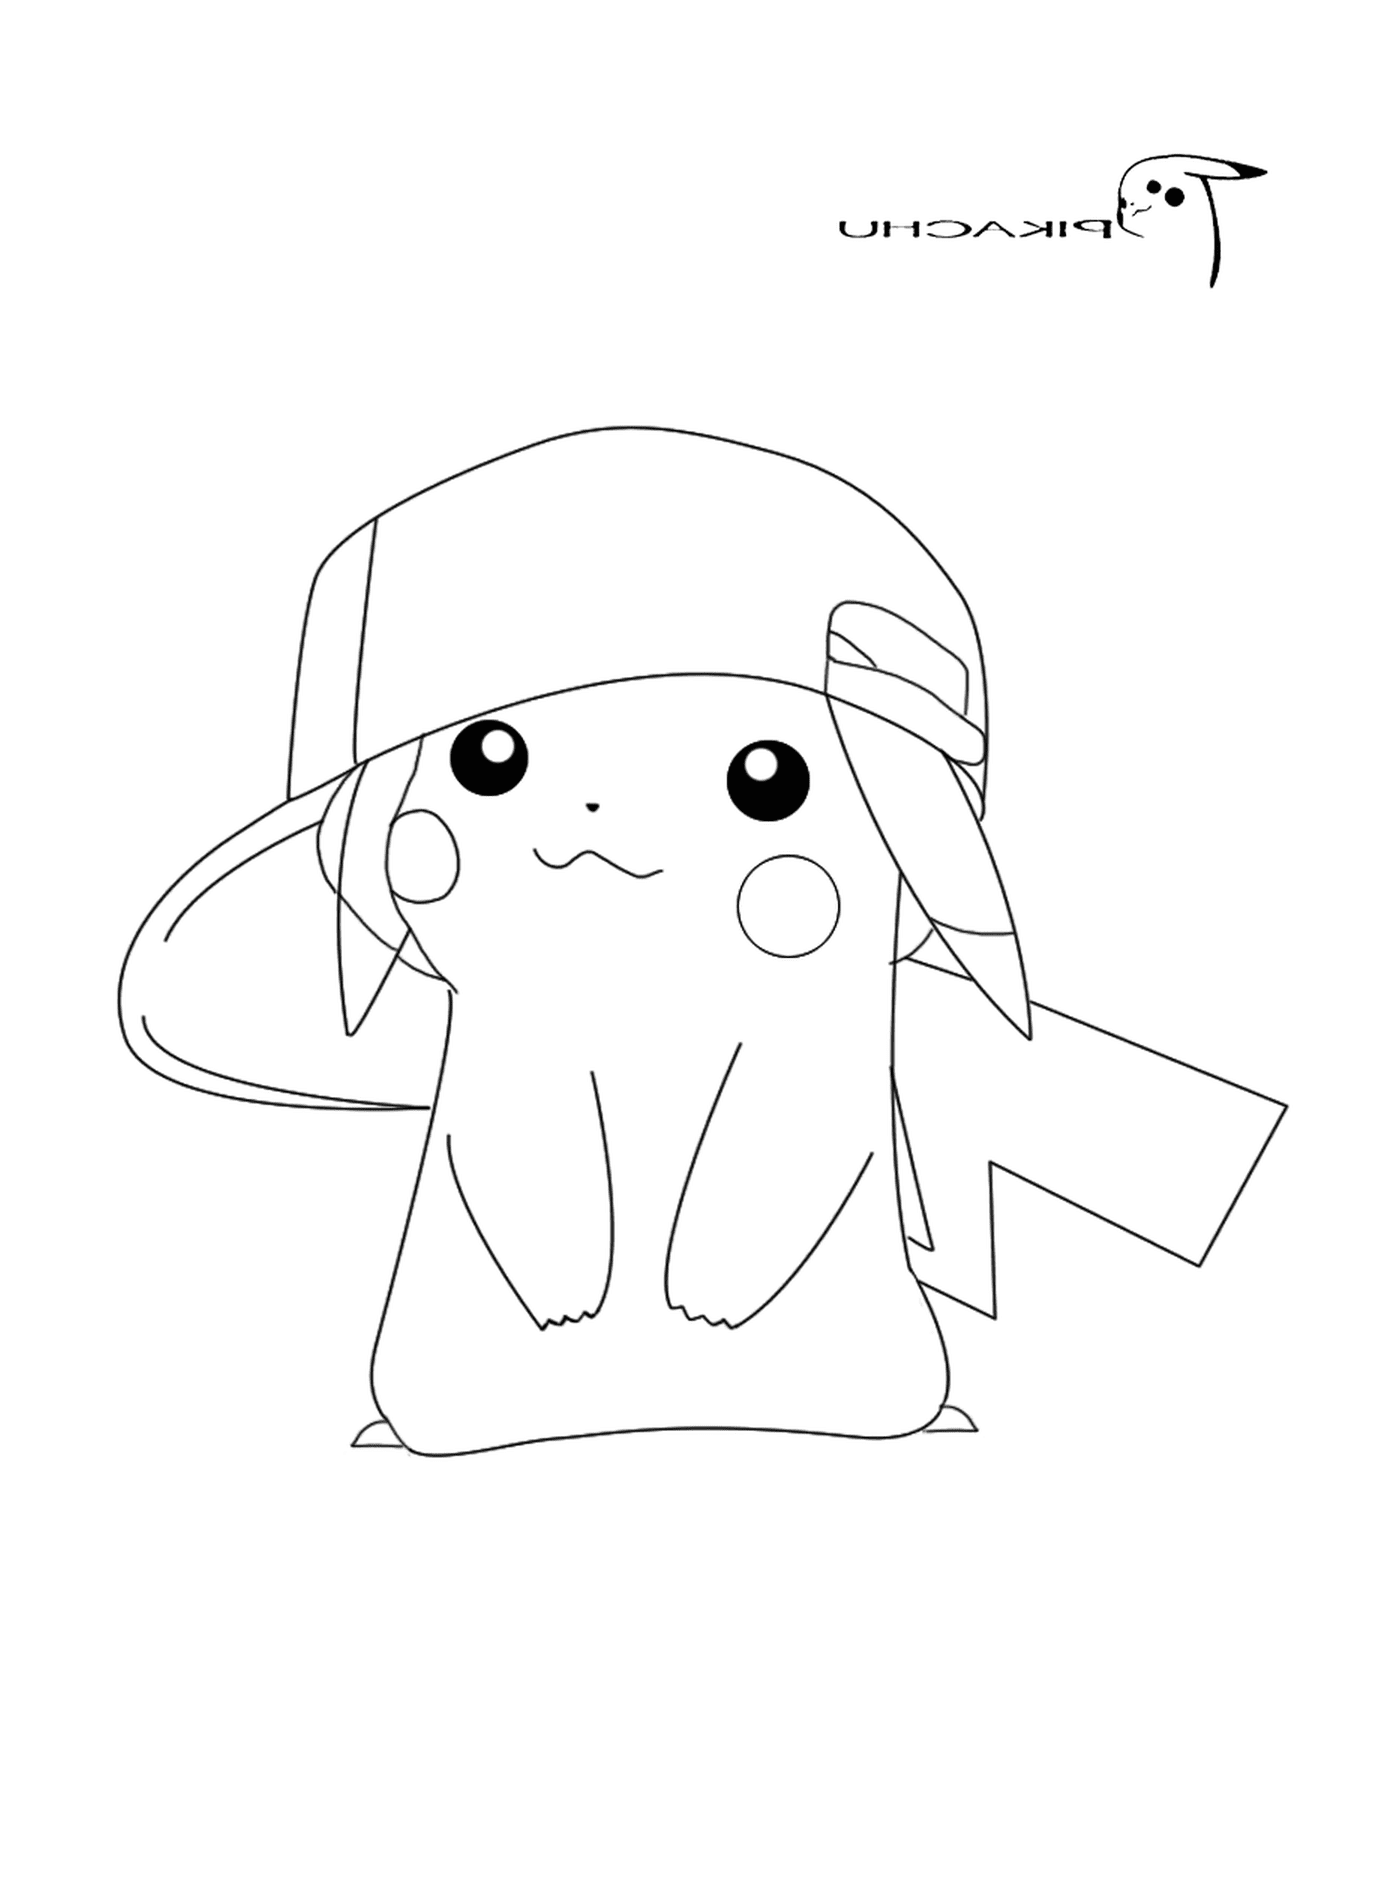 pikachu porte la casquette de sacha